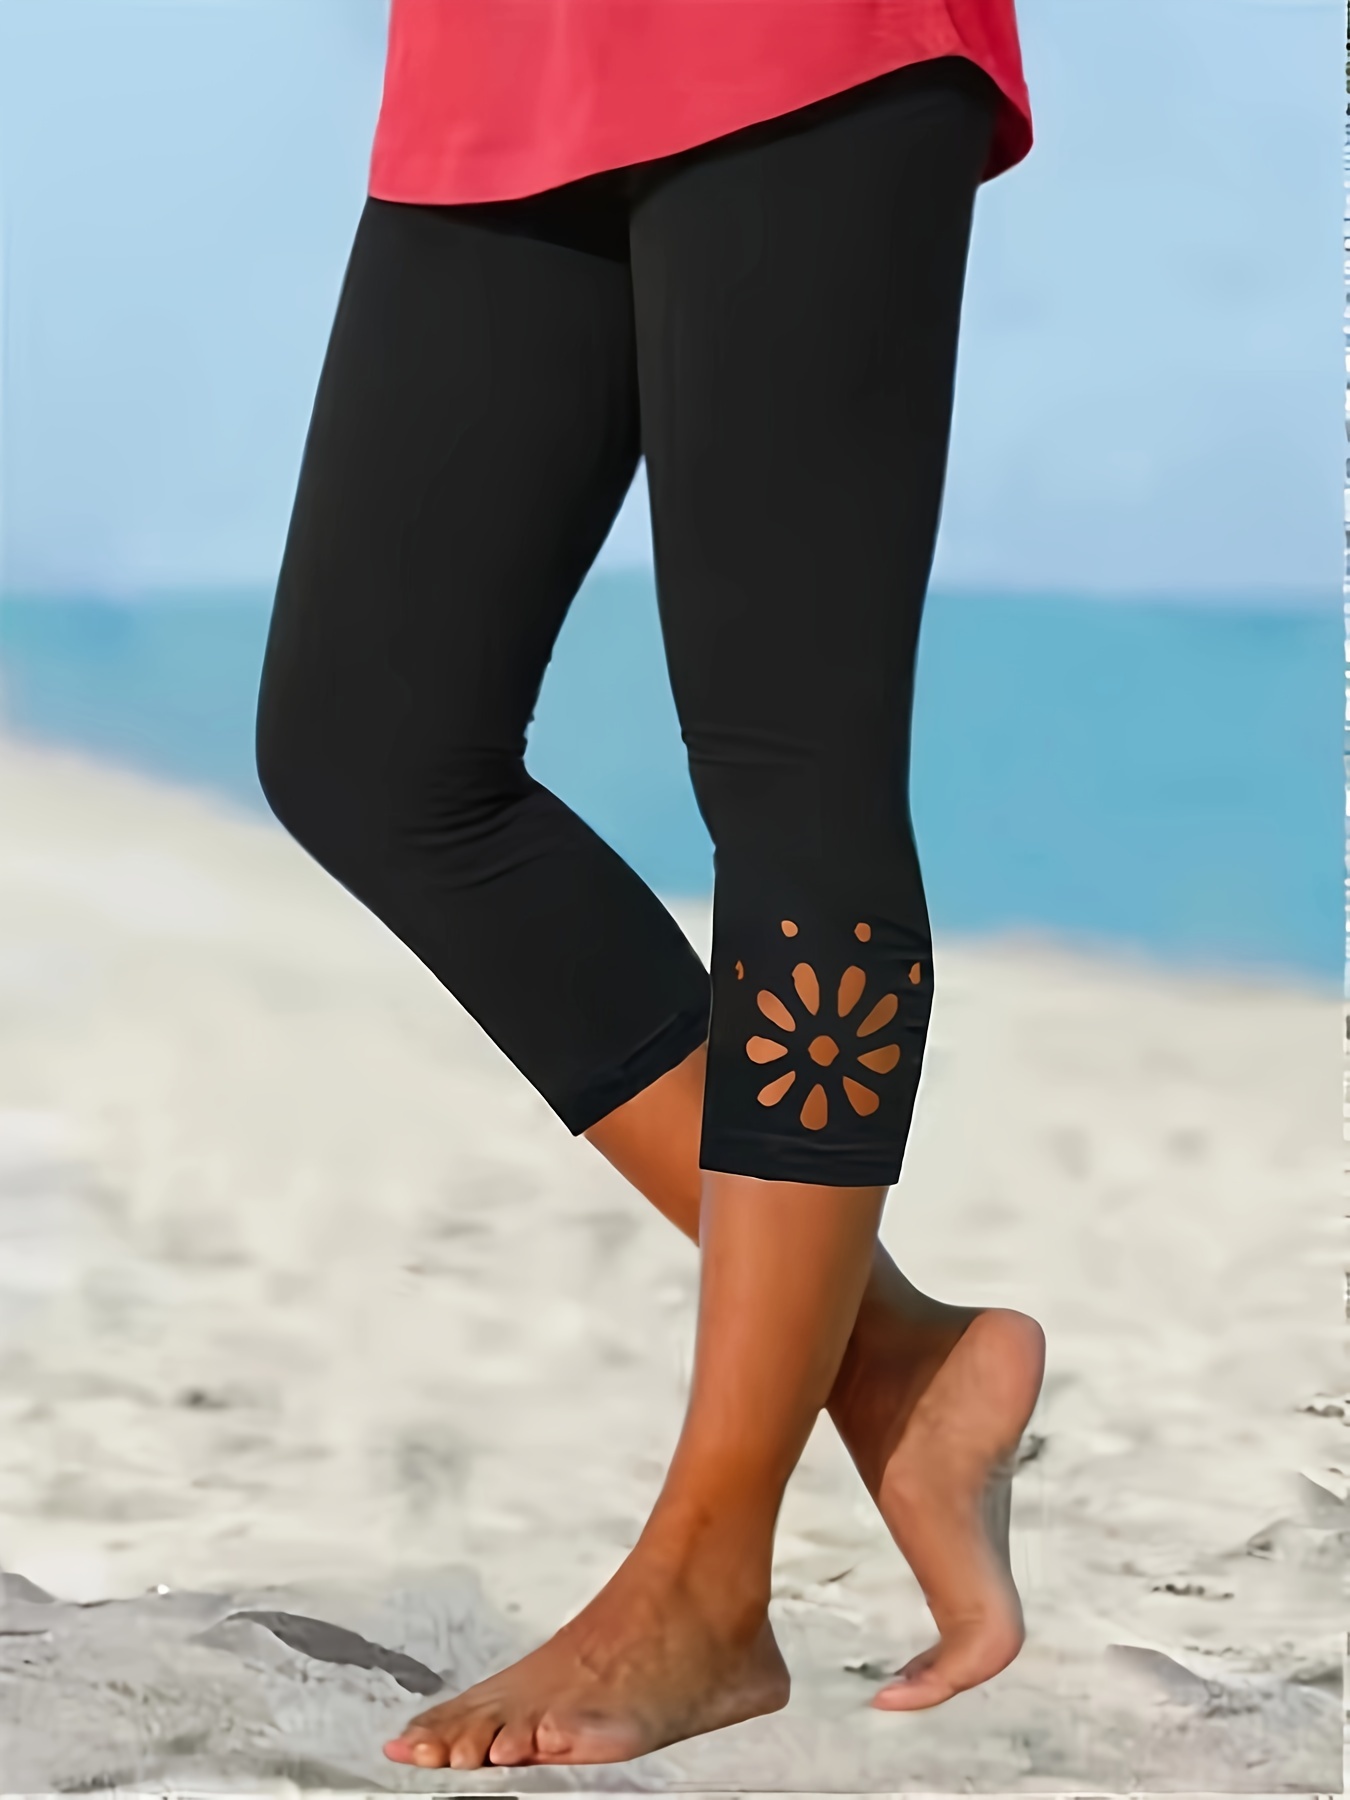 Capri Leggings for Women Knee Length Capris for Casual Summer Yoga